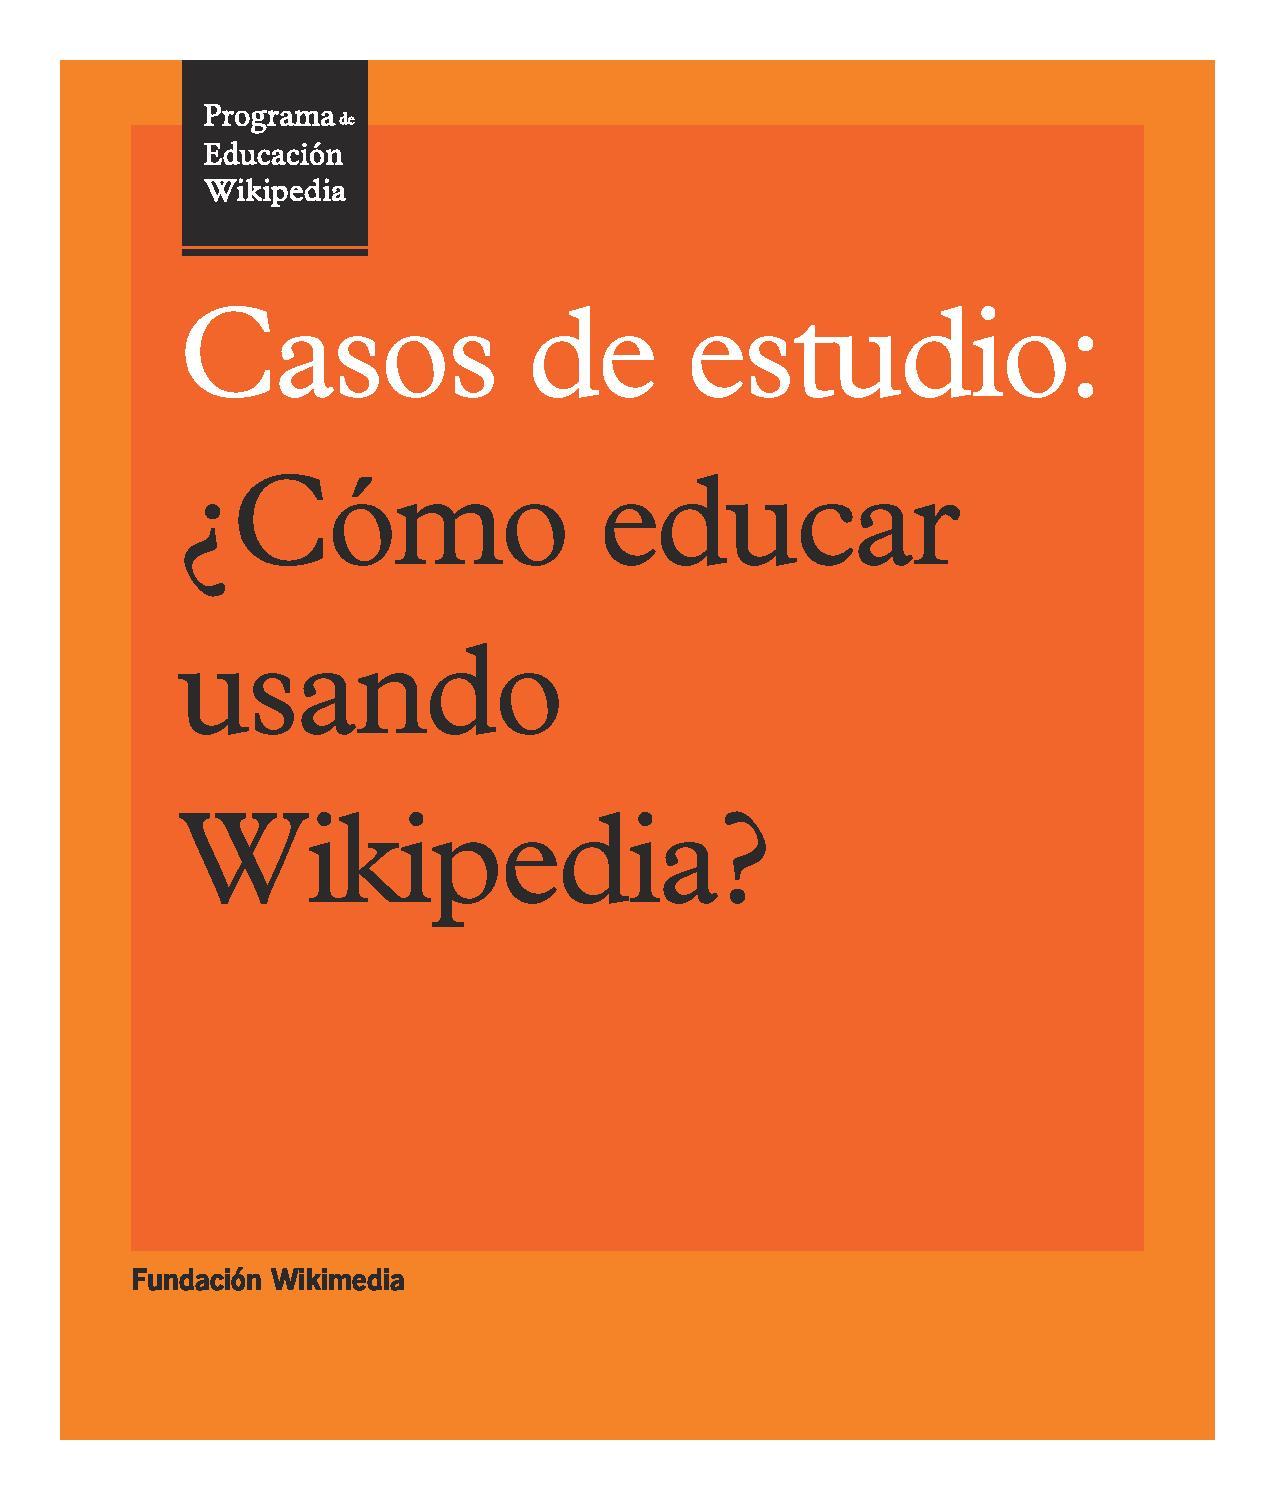 Programa de Educación Wikipedia - Casos de estudio